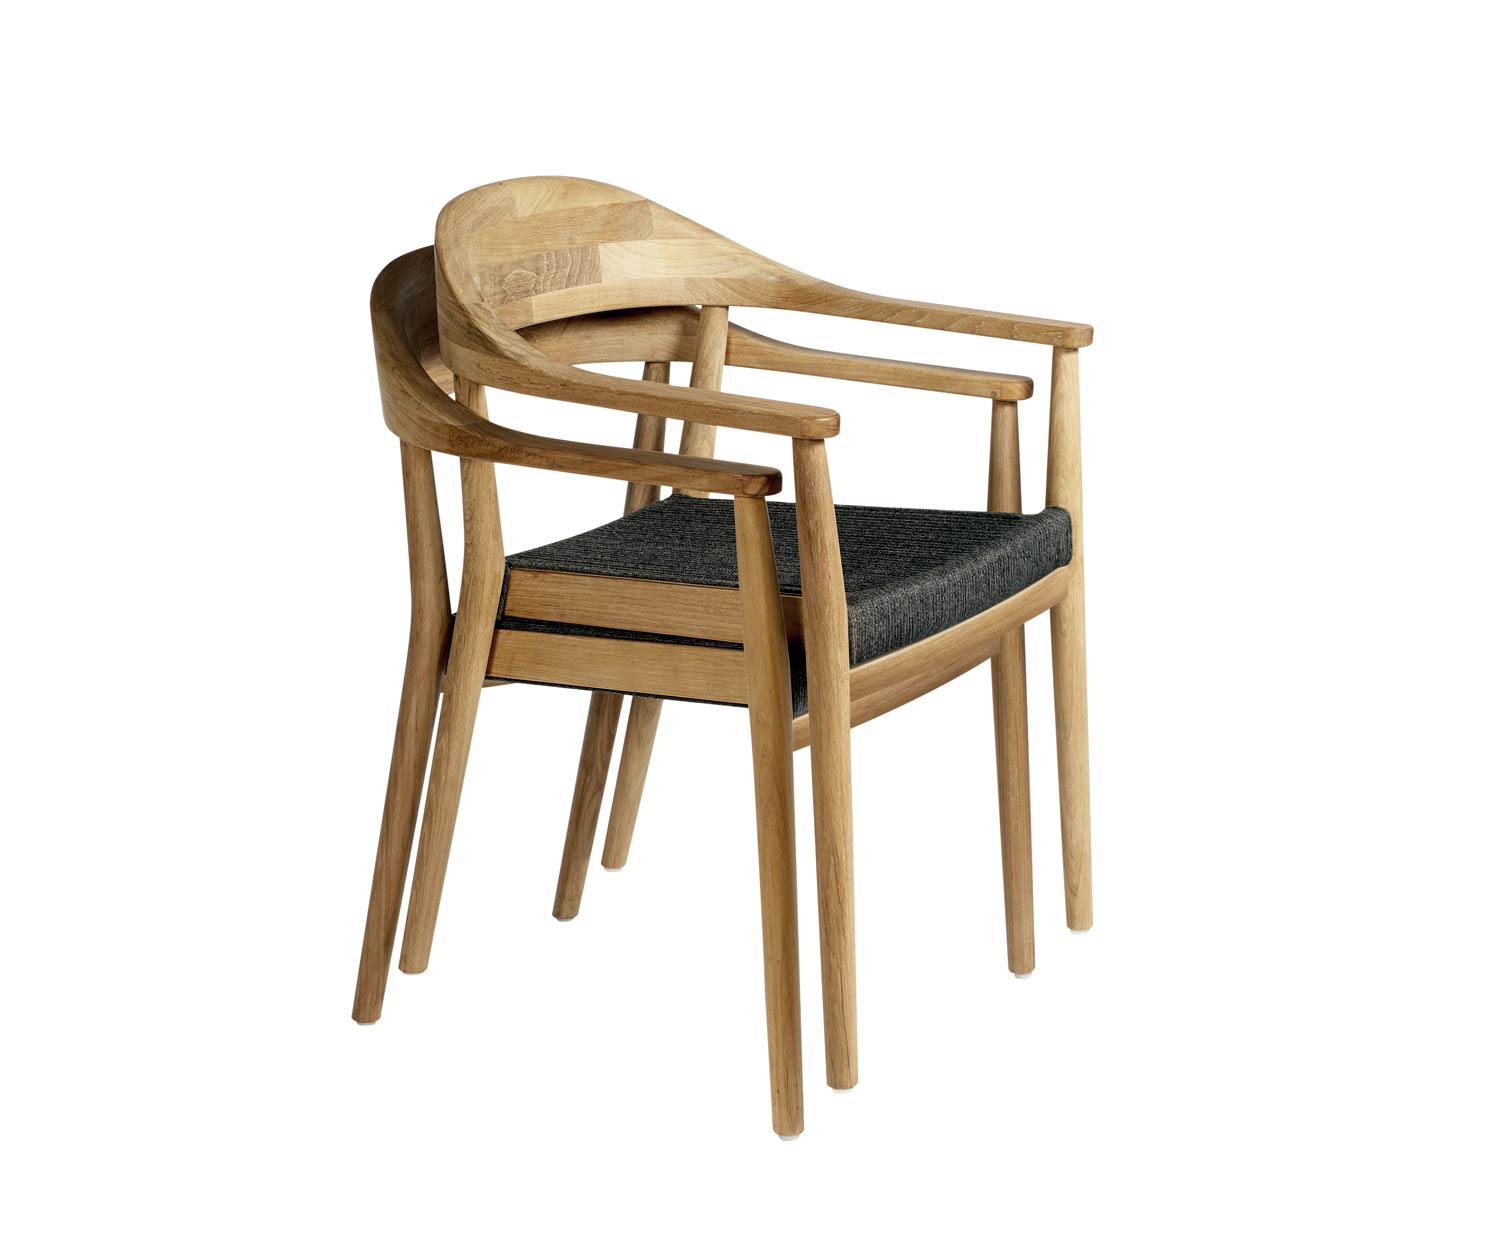 Oasiq La sedia Design Copenhagen è impilabile fino a due sedie